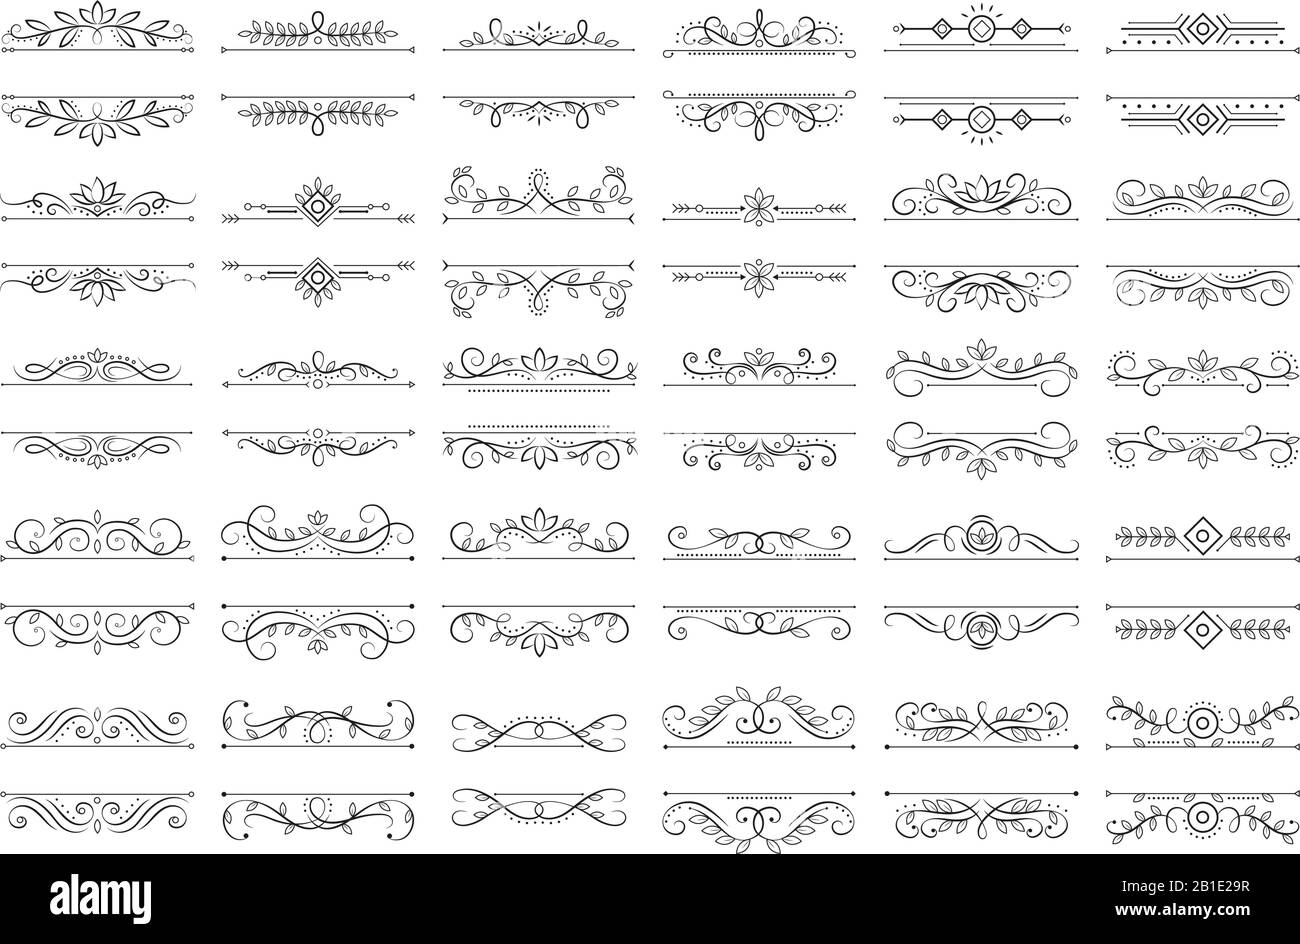 Klassische Kalligraphische Trennelemente. Verzierter Drallteiler, ornamentale Locken und verzierte Dekorrahmen Schablonenvektor-Set Stock Vektor